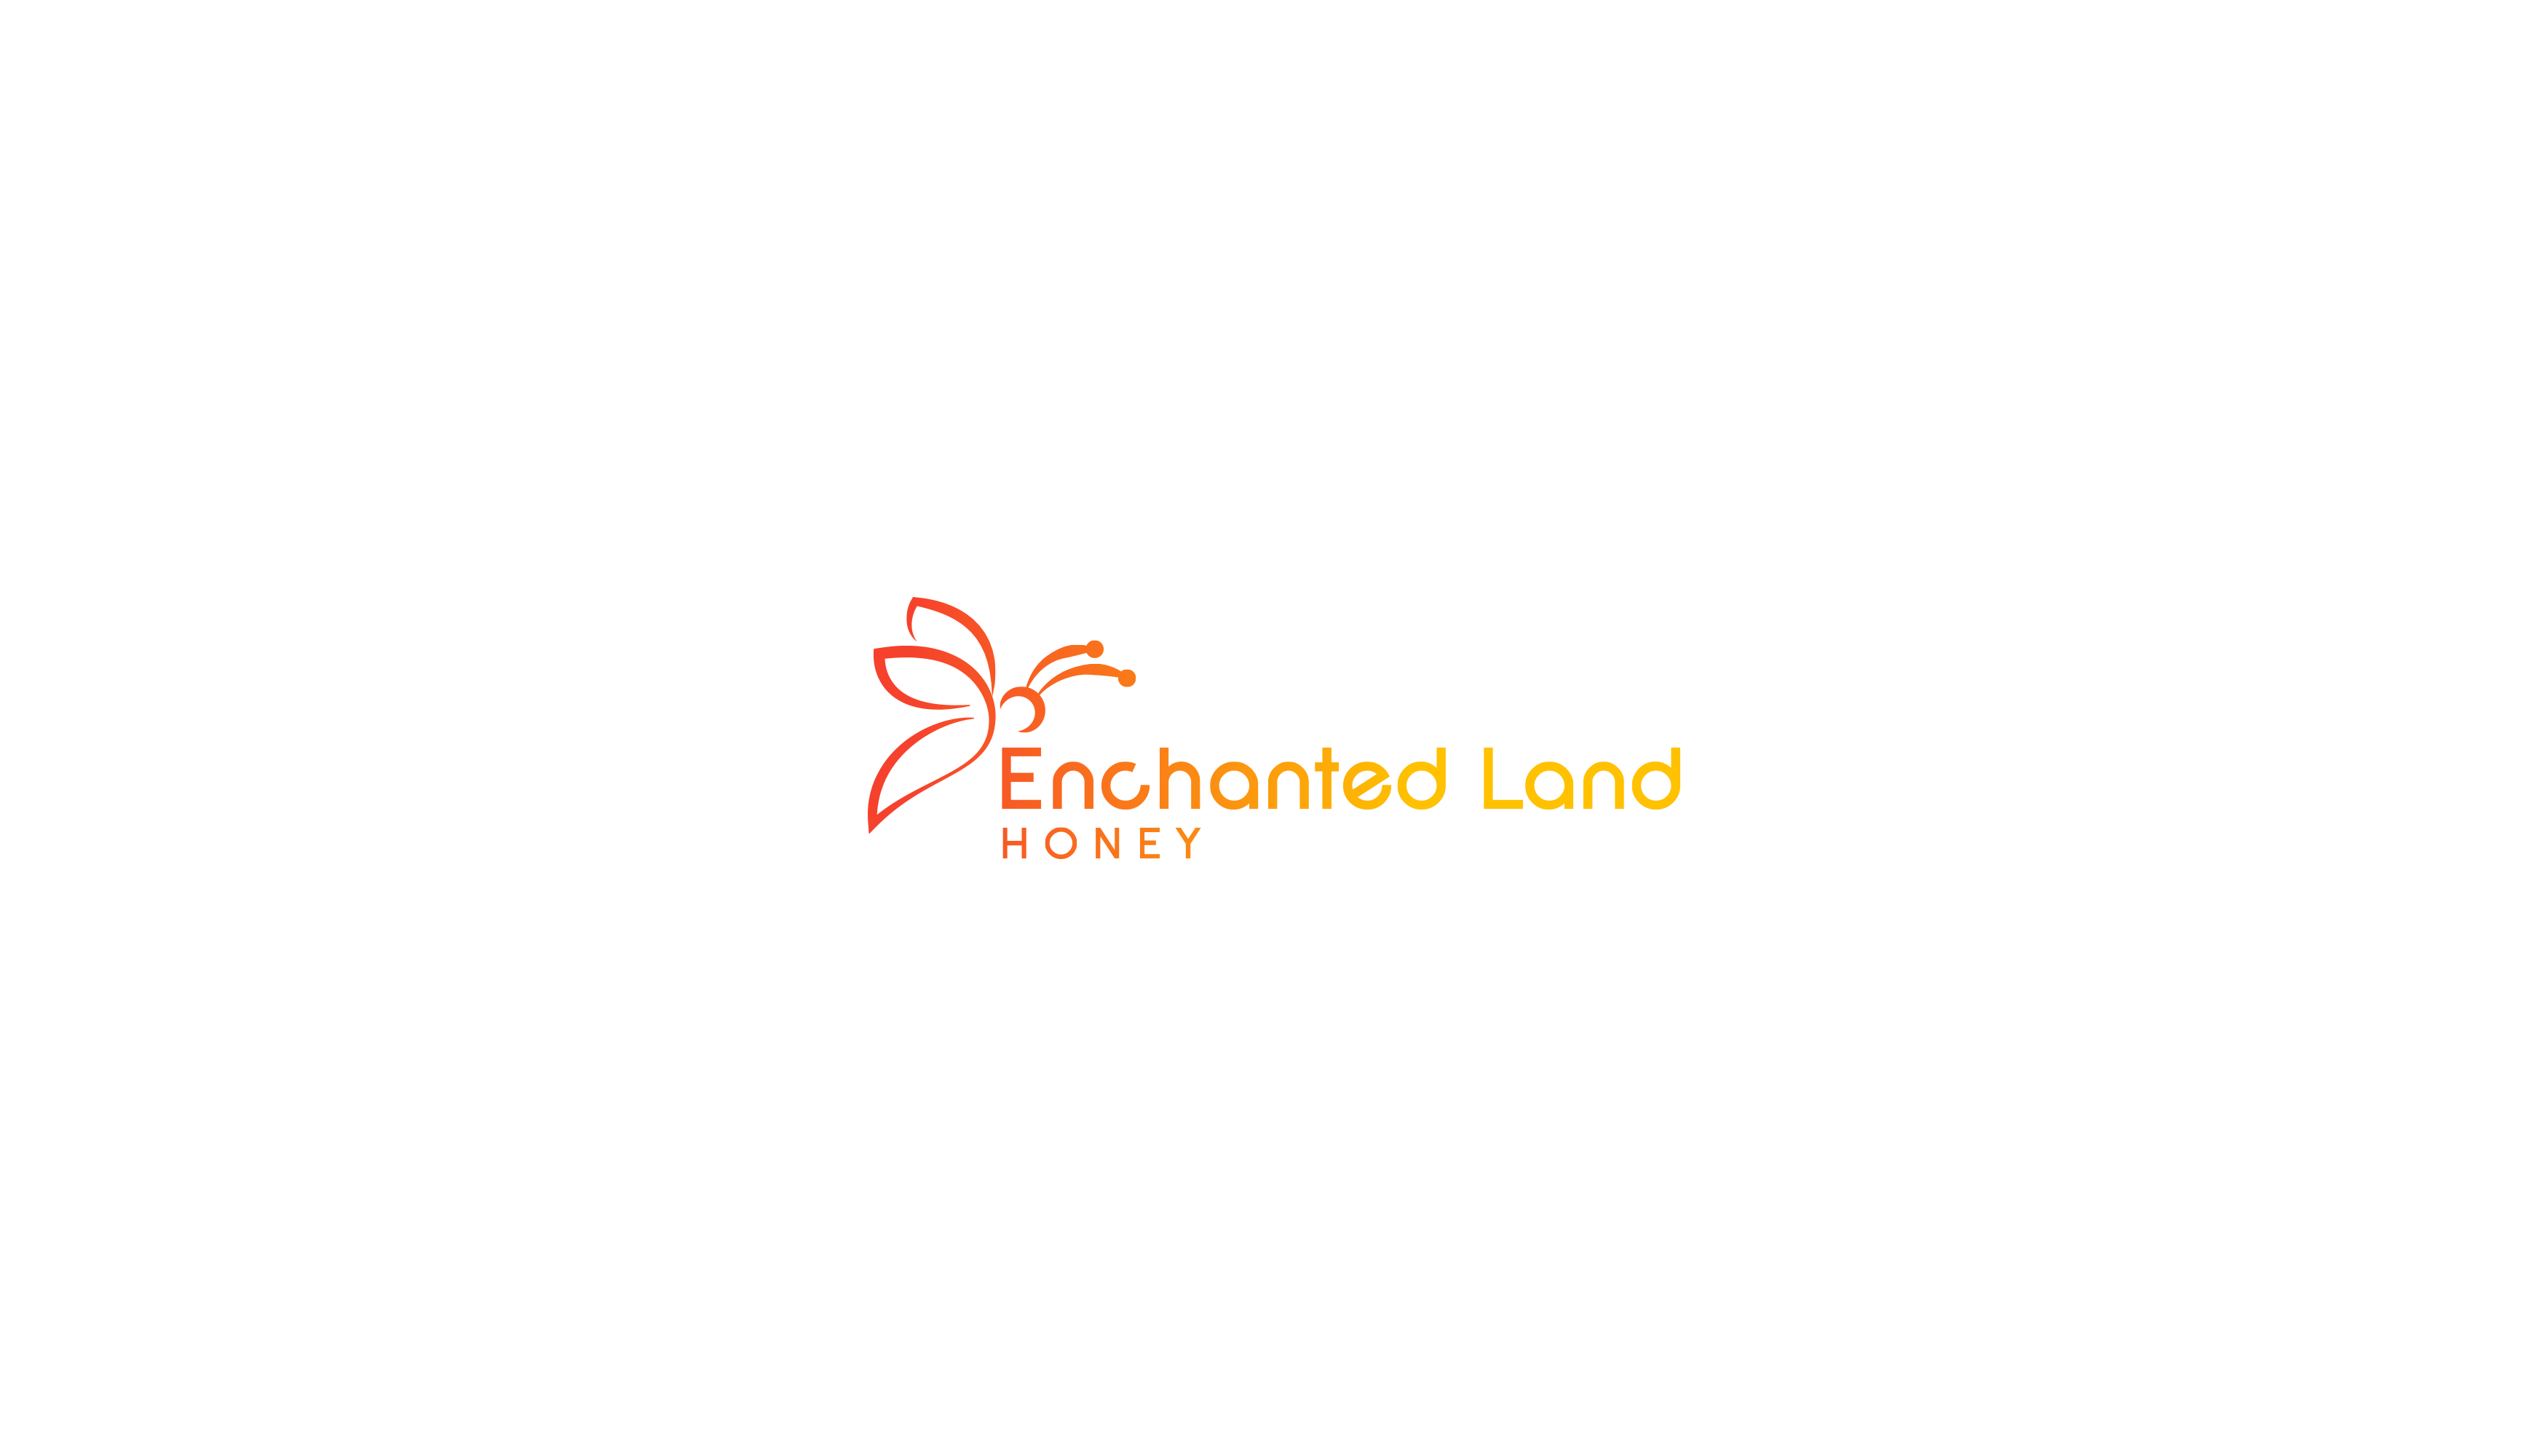 Enchanted Land Honey